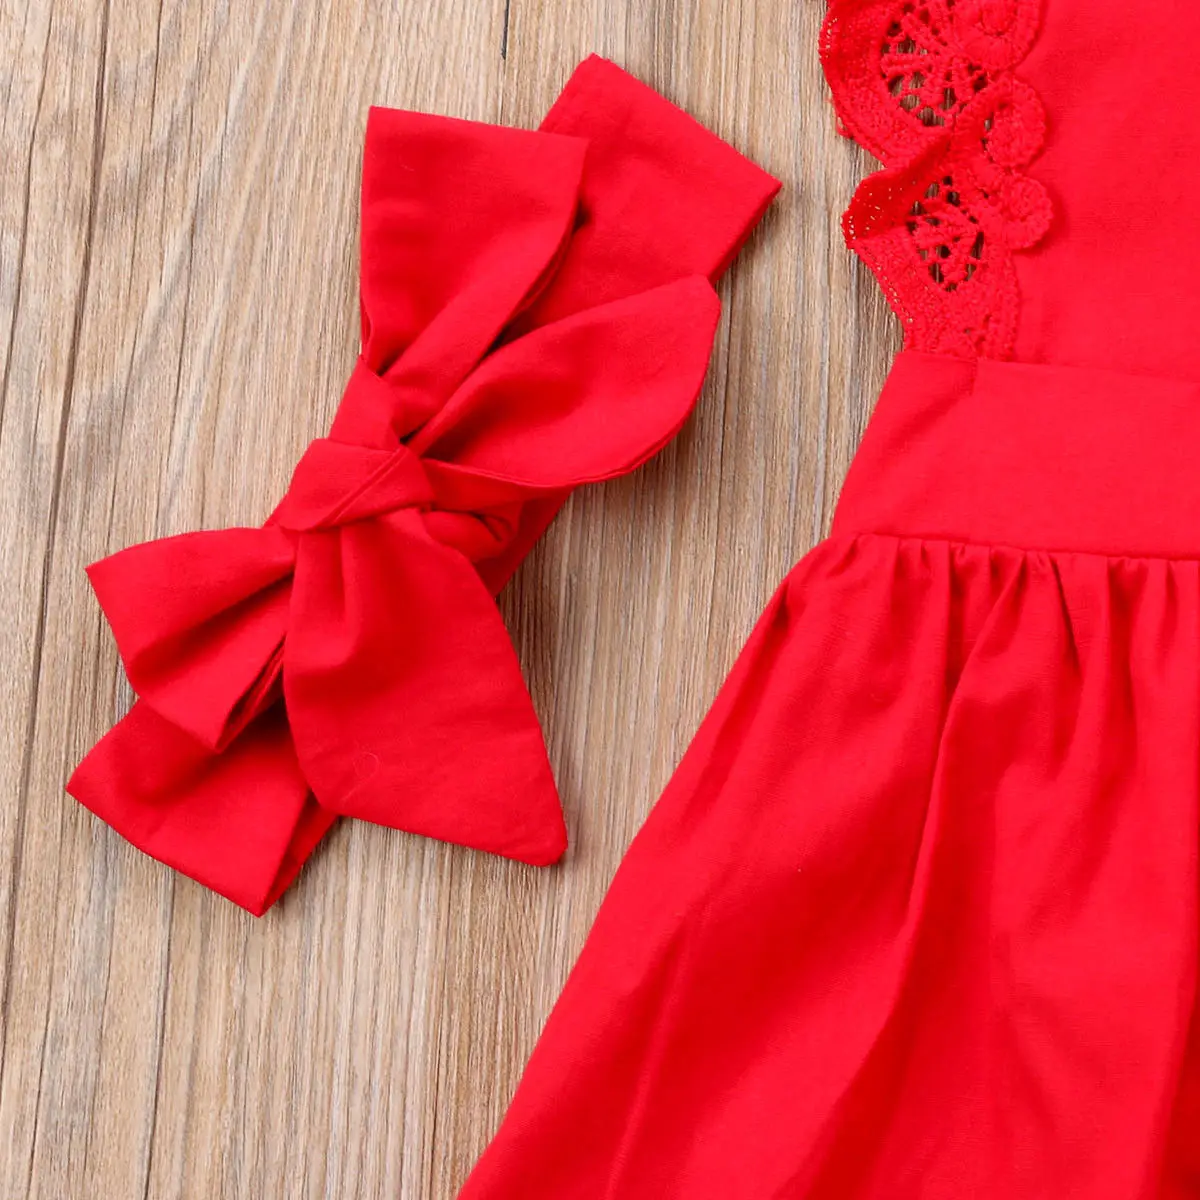 2019 חדש 2Pcs חג המולד תינוק תינוק תינוק שרק נולד בנות רומפר השמלה, החליפה תלבושות טוטו להלביש+בגימור אדום ערכות מתנה - 2